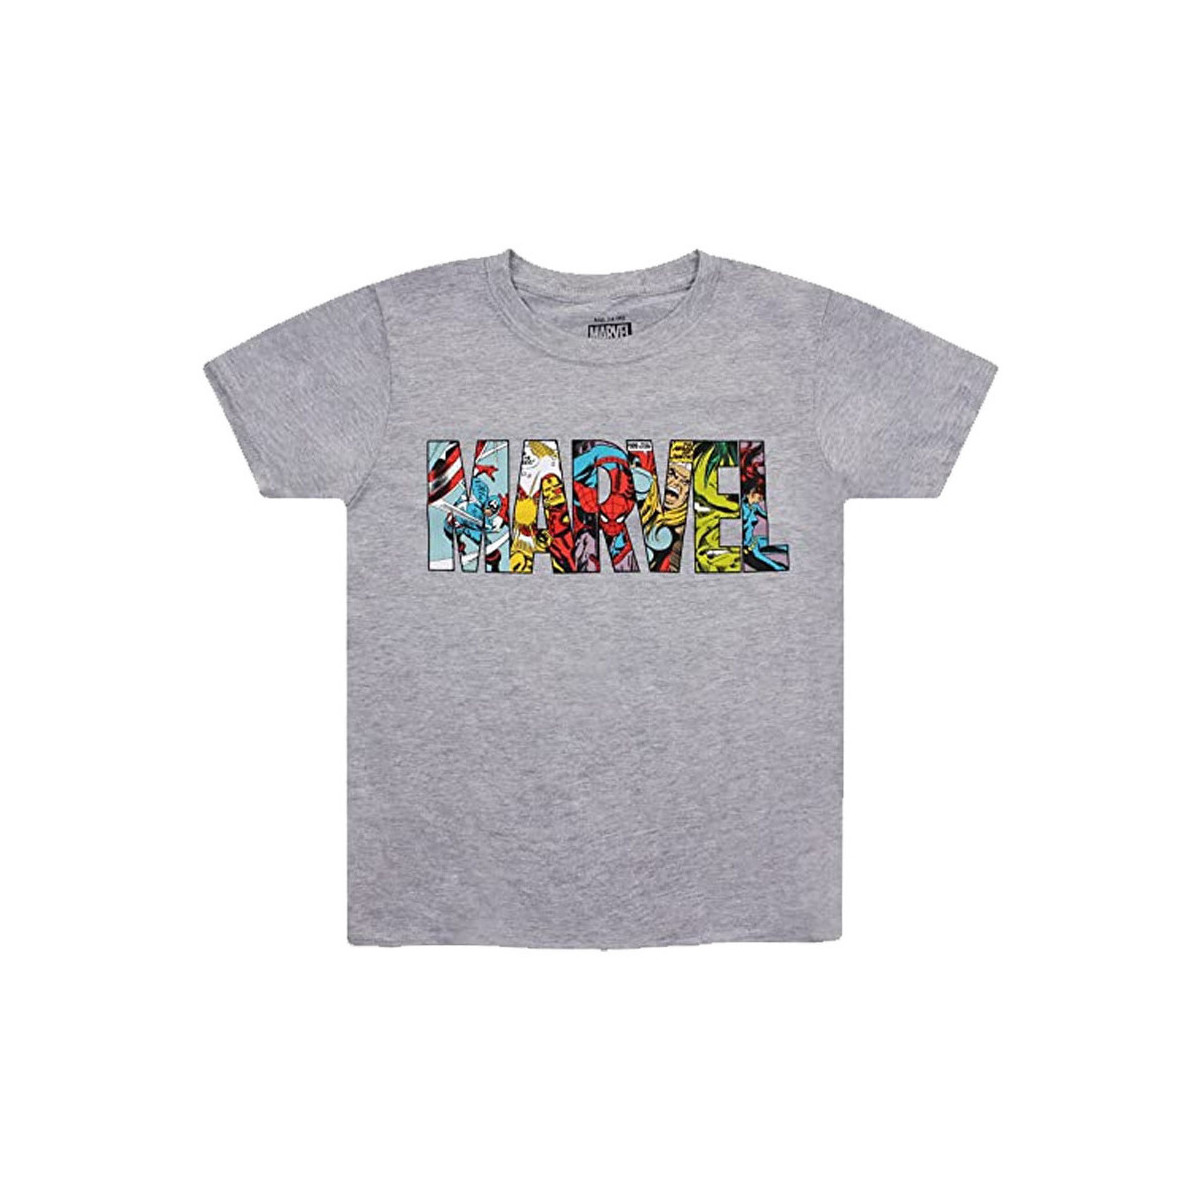 Vêtements Garçon T-shirts manches courtes Marvel  Gris